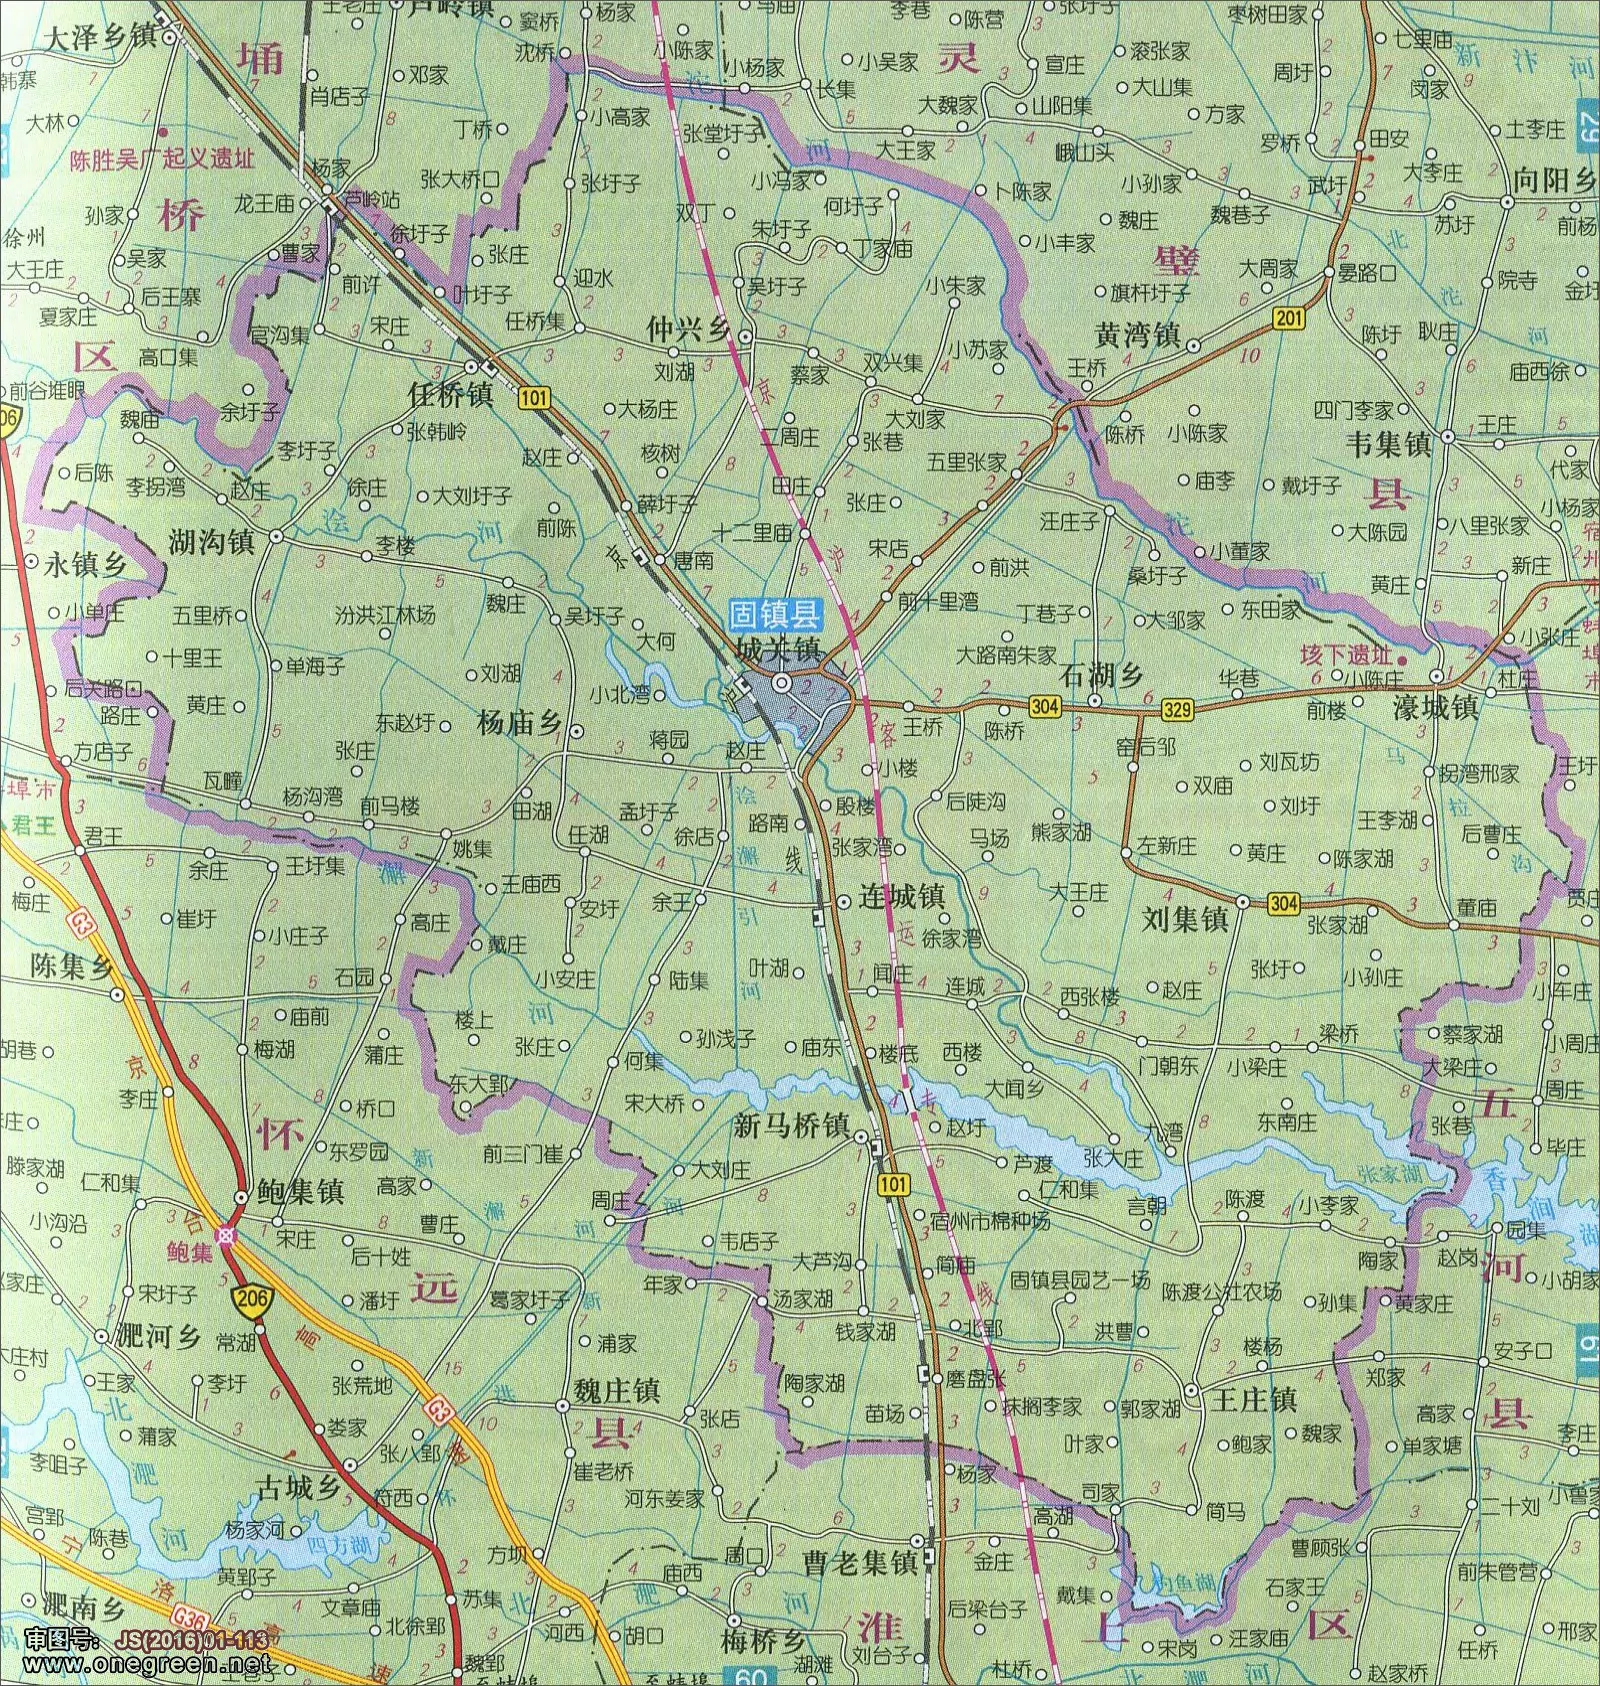 固镇地图,五河地图|固镇地图,五河地图全图高清版大图片|旅途风景图片网|www.visacits.com